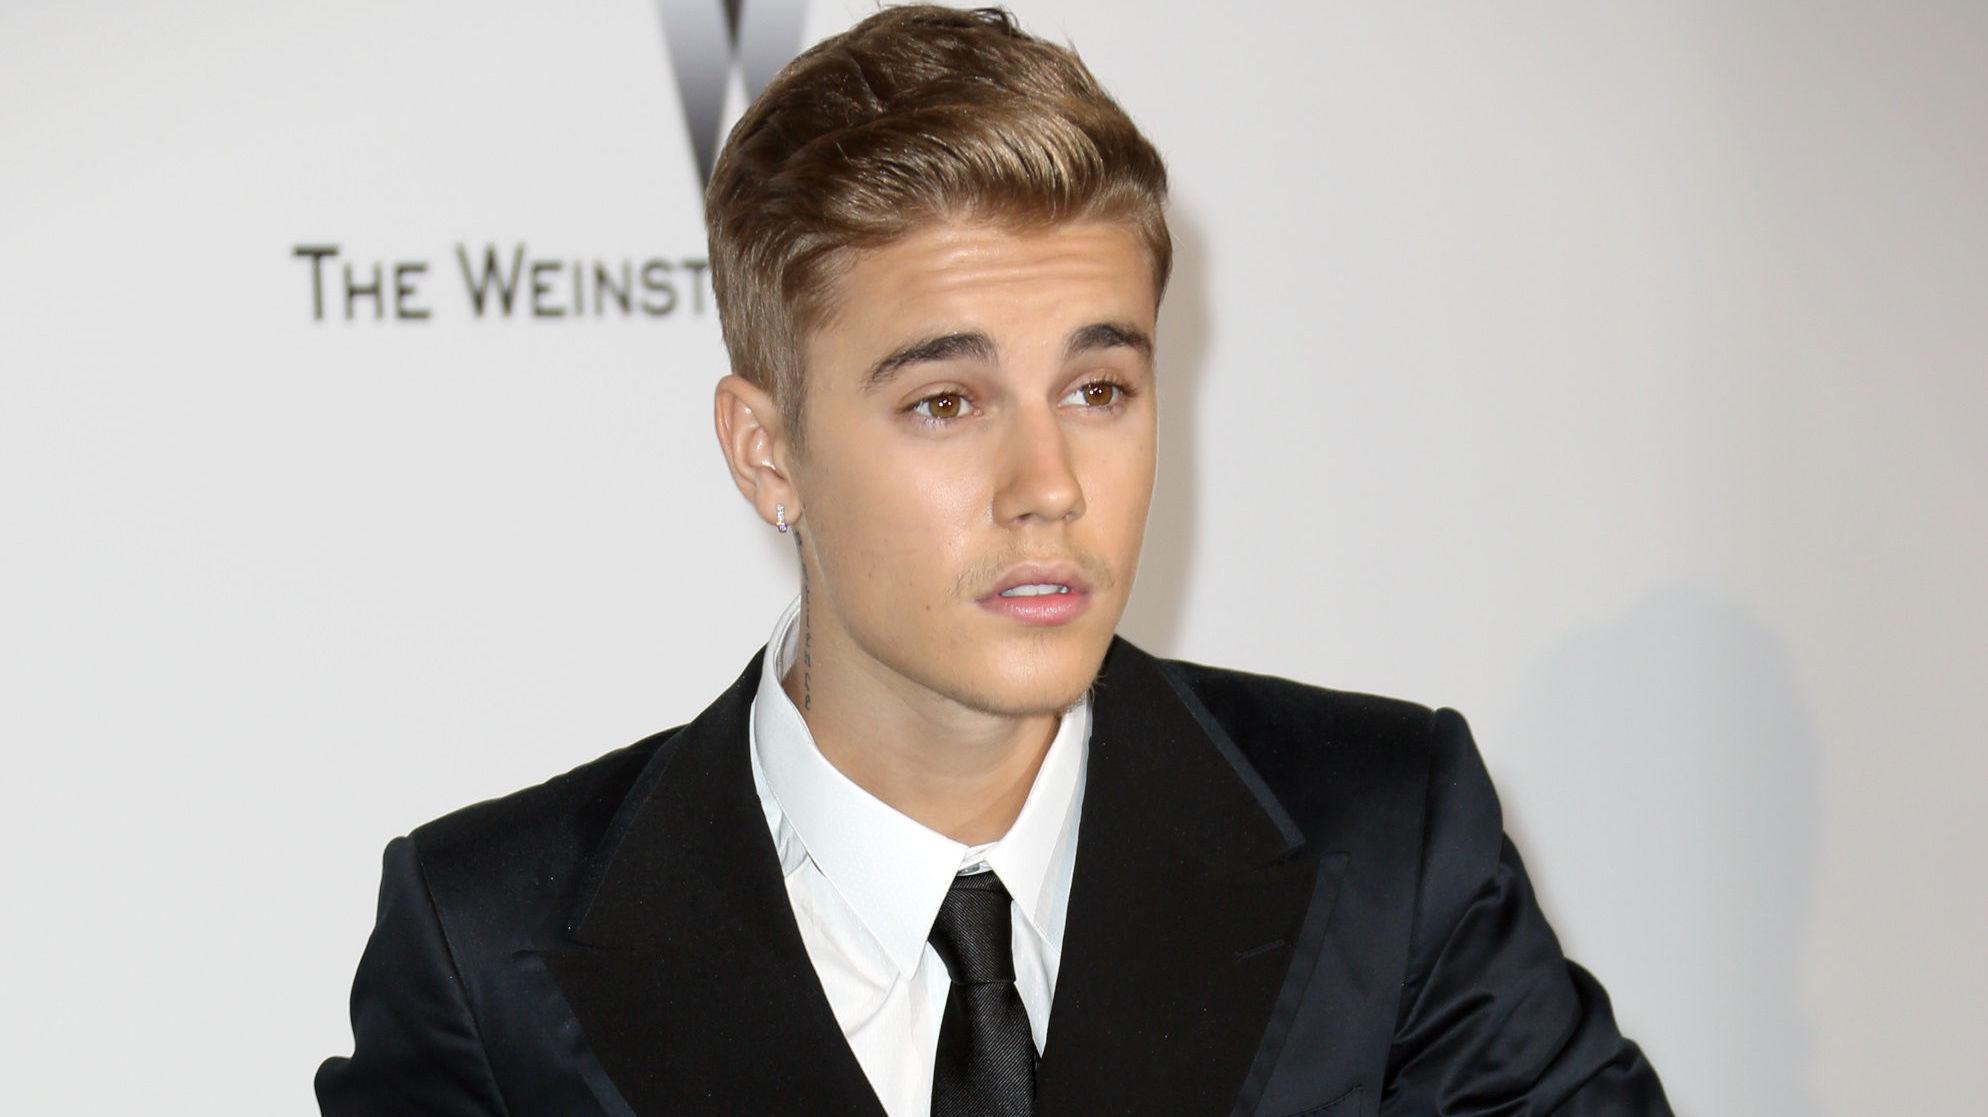 FØR: Slik så Justin Bieber (20) ut før han satt seg i frisørstolen og lot frisøren kvitte seg med de brune lokkene. Foto: Getty Images